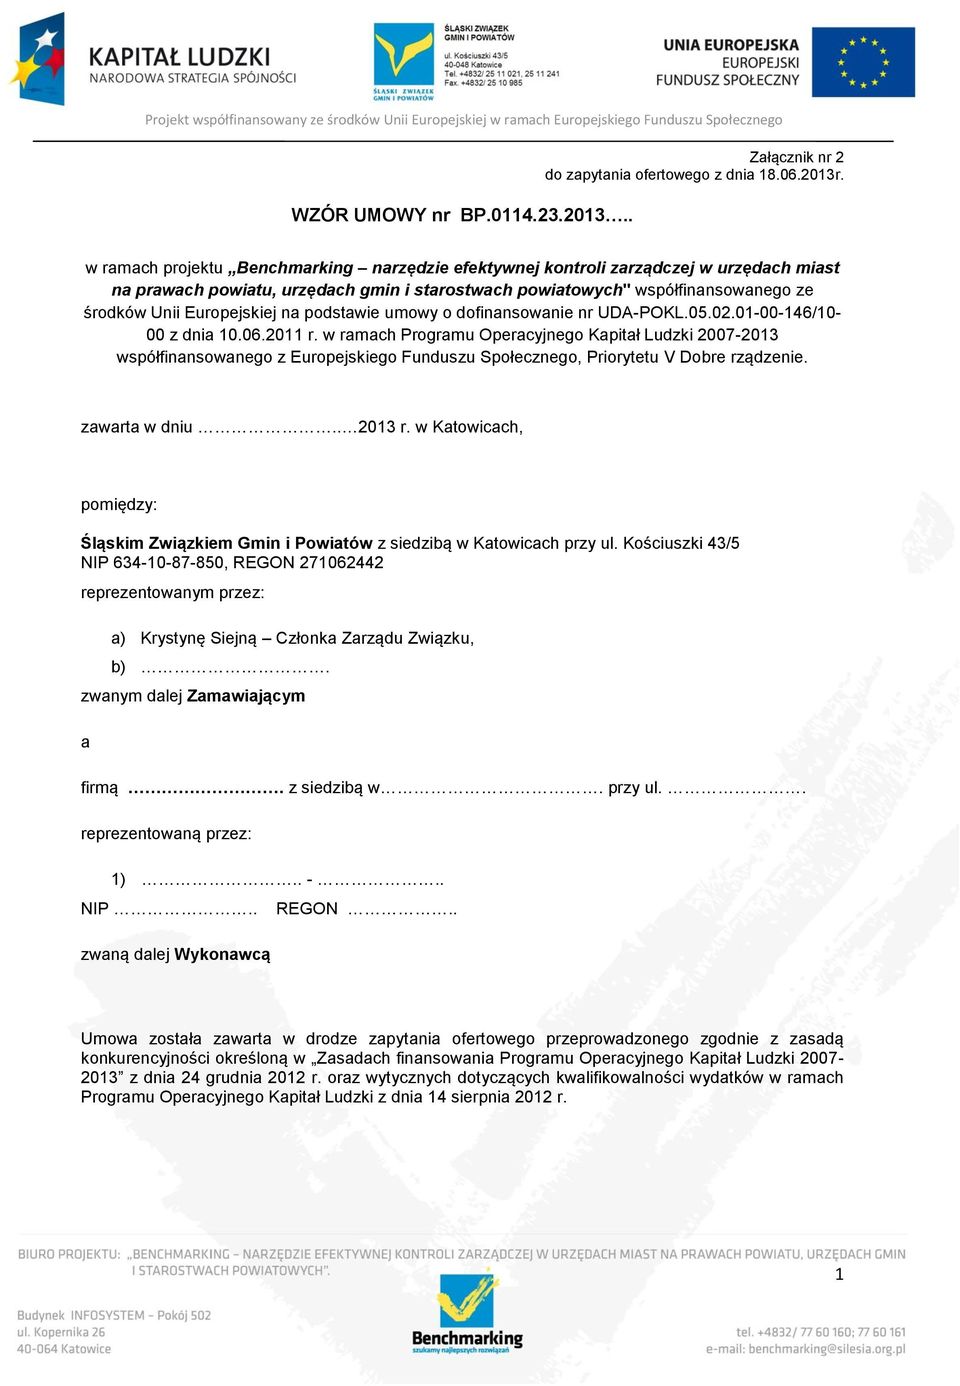 na podstawie umowy o dofinansowanie nr UDA-POKL.05.02.01-00-146/10-00 z dnia 10.06.2011 r.